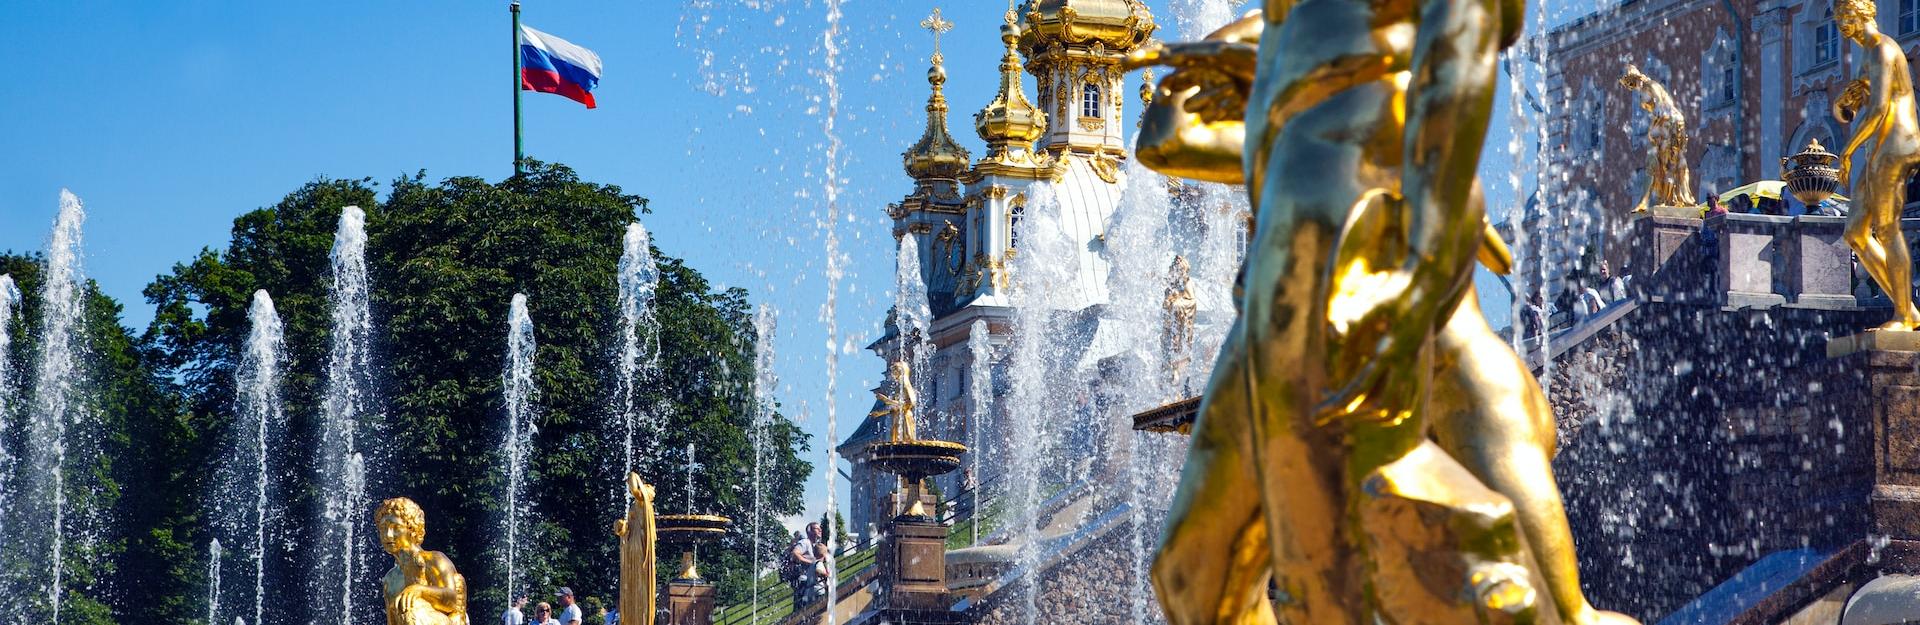 Большая экскурсия «Петергоф максимум: Большой дворец, фонтаны, малый дворец» со скидкой 36%